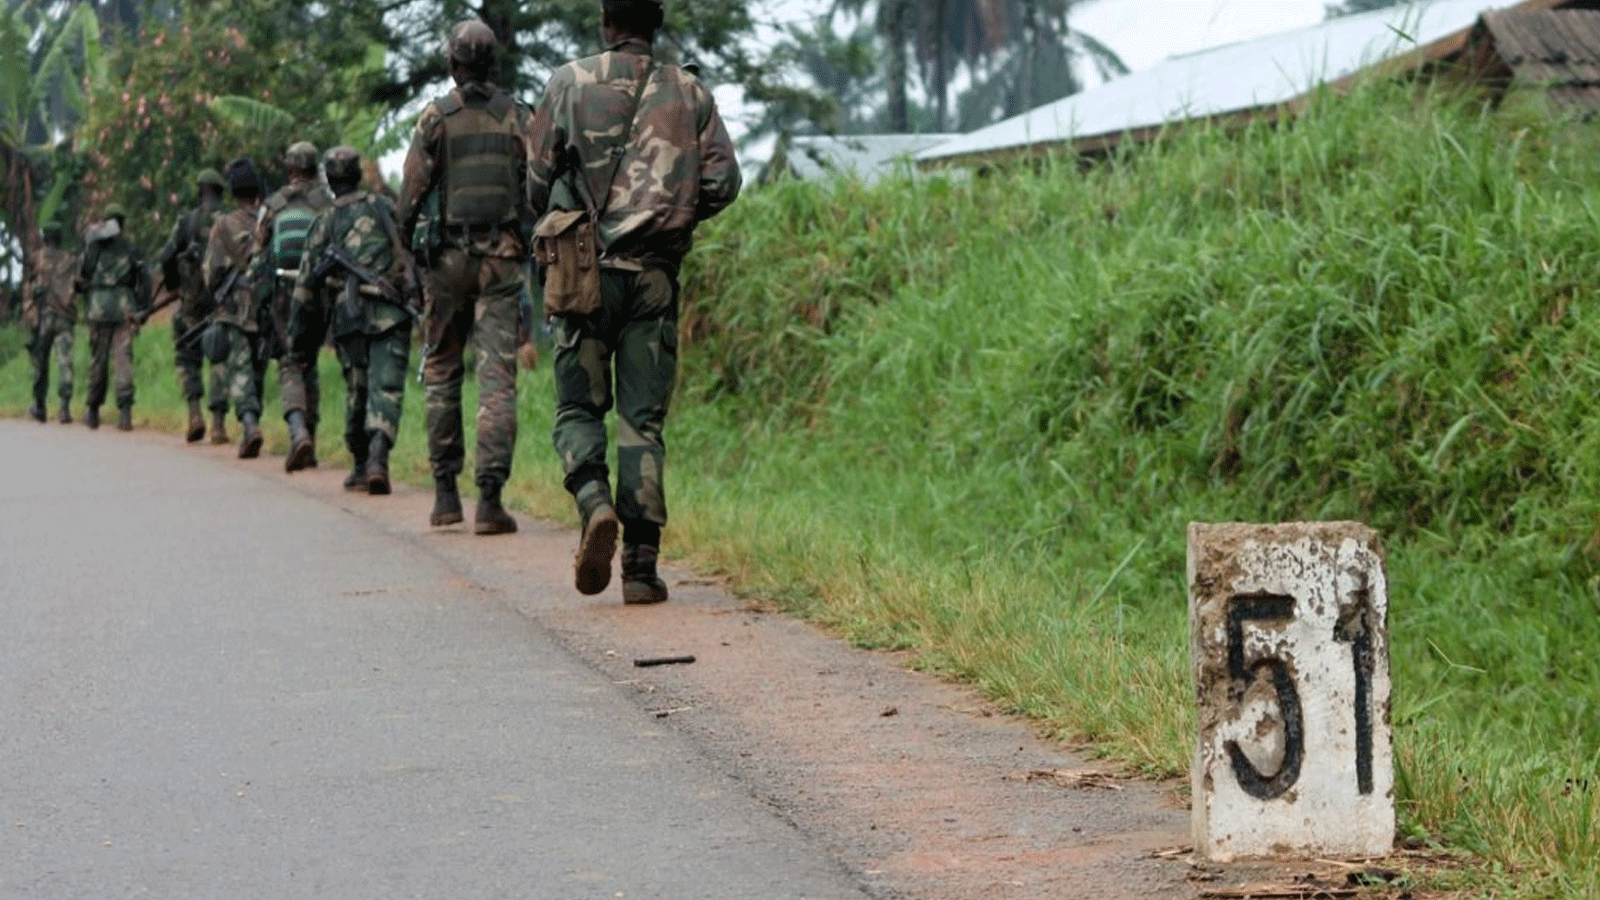 جنود من جمهورية الكونغو الديمقراطية يسيرون نحو خط المواجهة في بيني للقتال ضد قوات الحلفاء الديمقراطية.